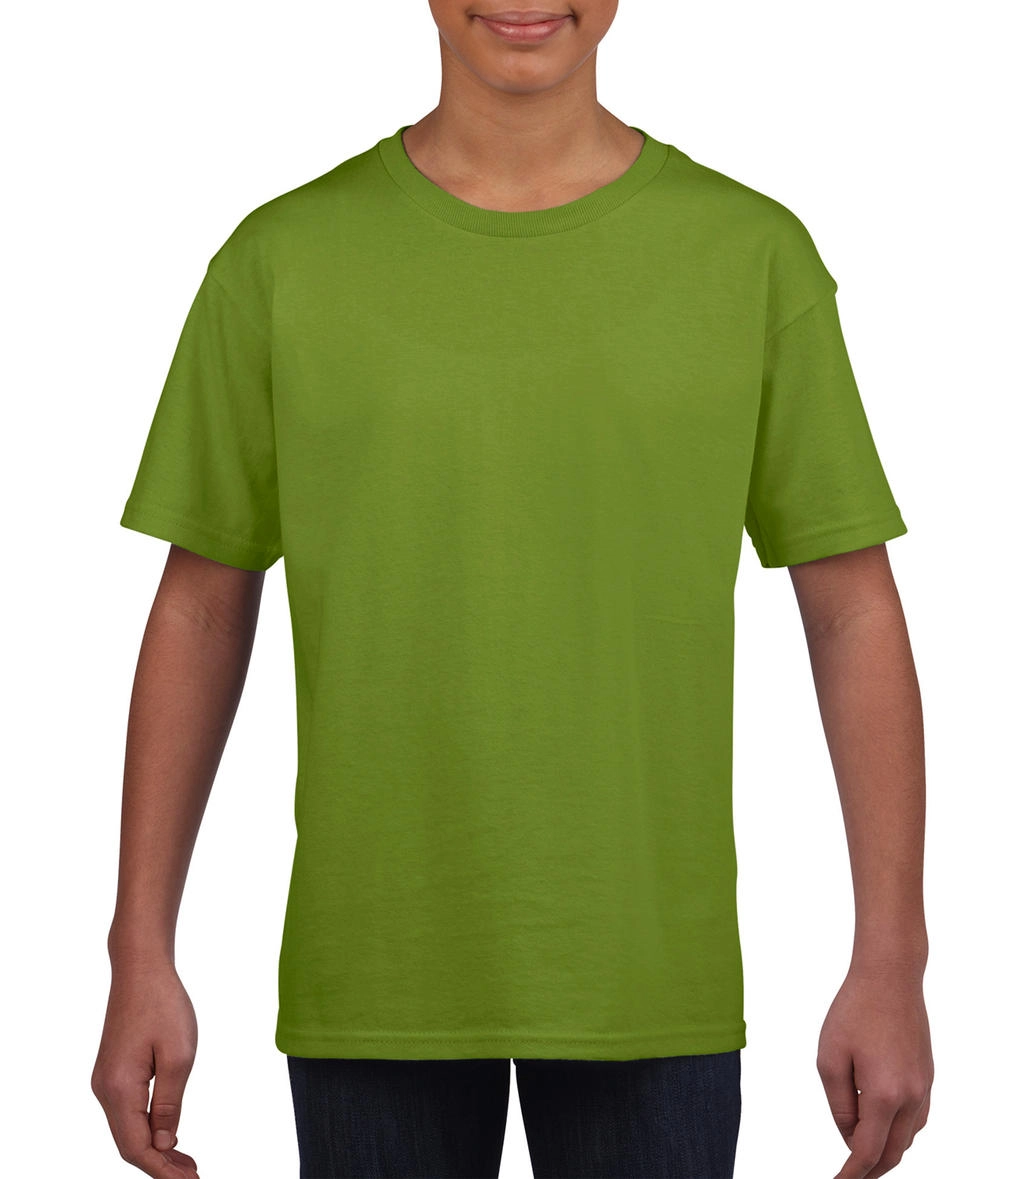 Softstyle® Youth T-Shirt zum Besticken und Bedrucken in der Farbe Kiwi mit Ihren Logo, Schriftzug oder Motiv.